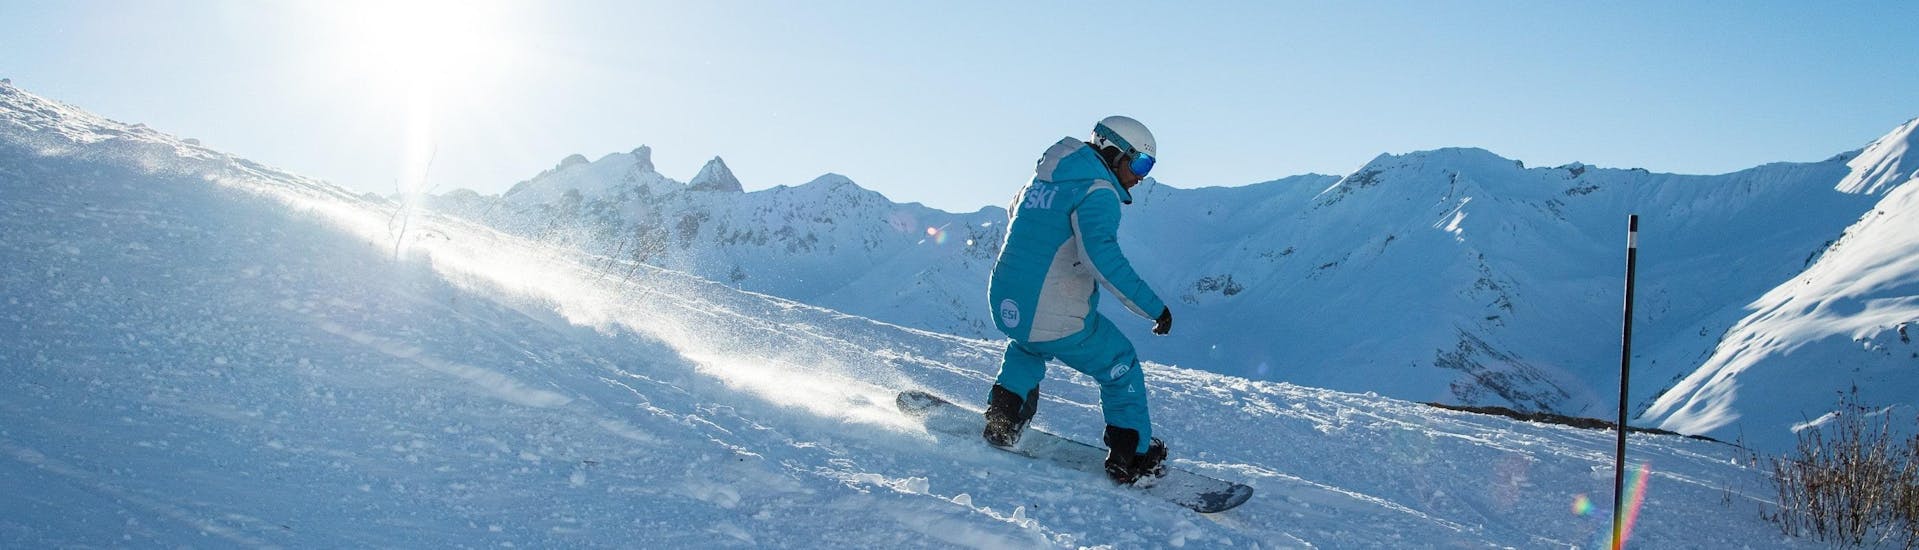 Privé snowboardlessen vanaf 7 jaar voor alle niveaus.